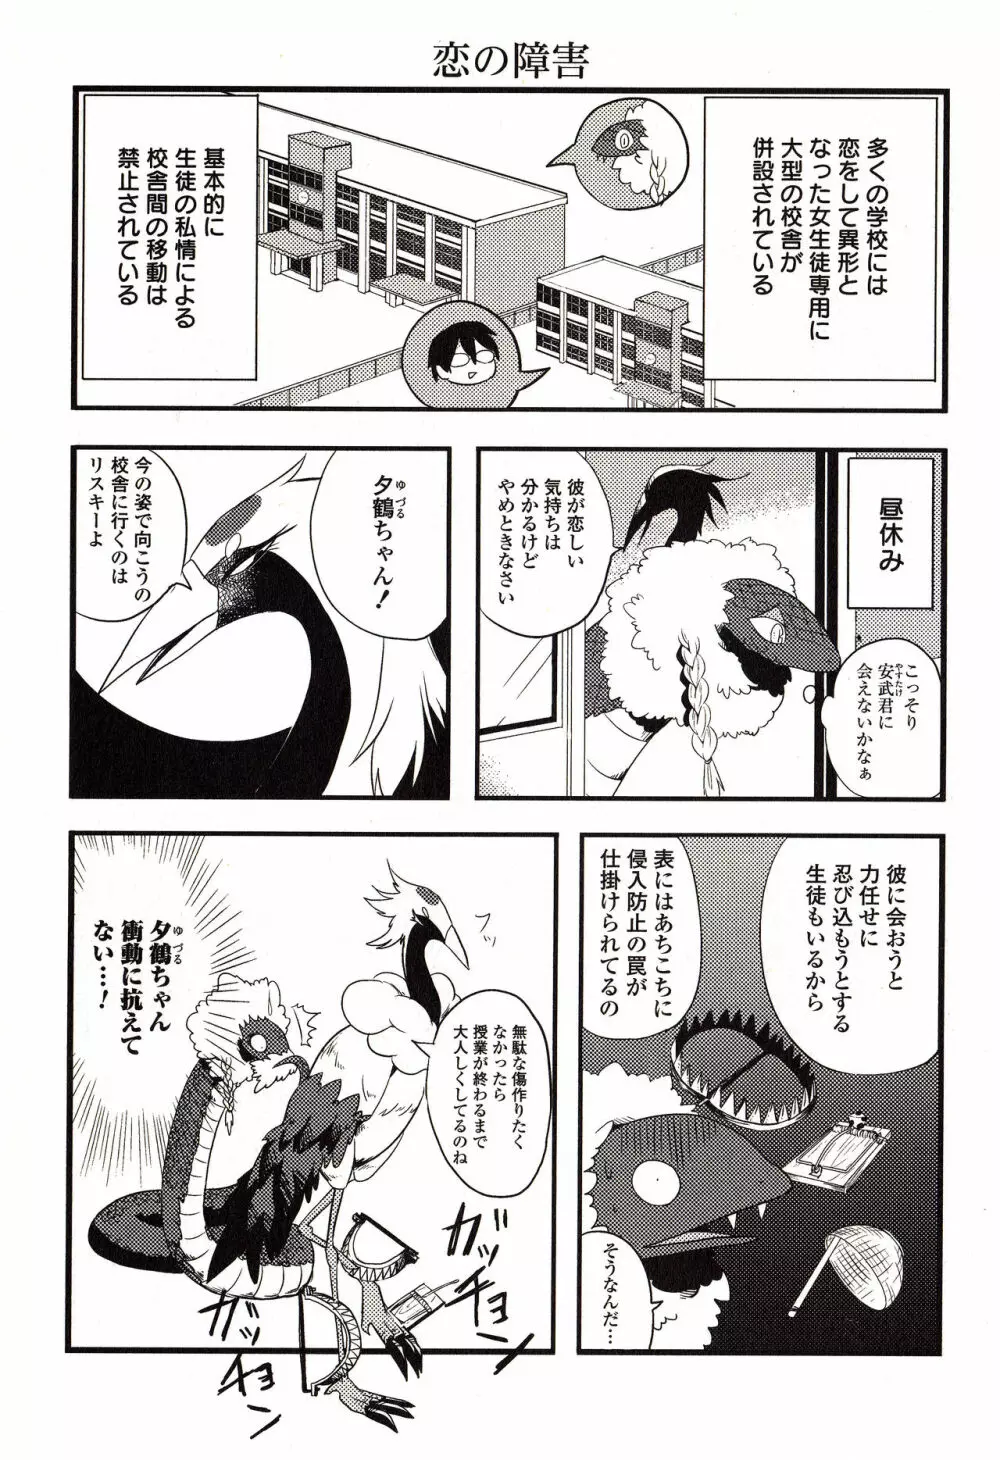 Sanzo manga 29ページ